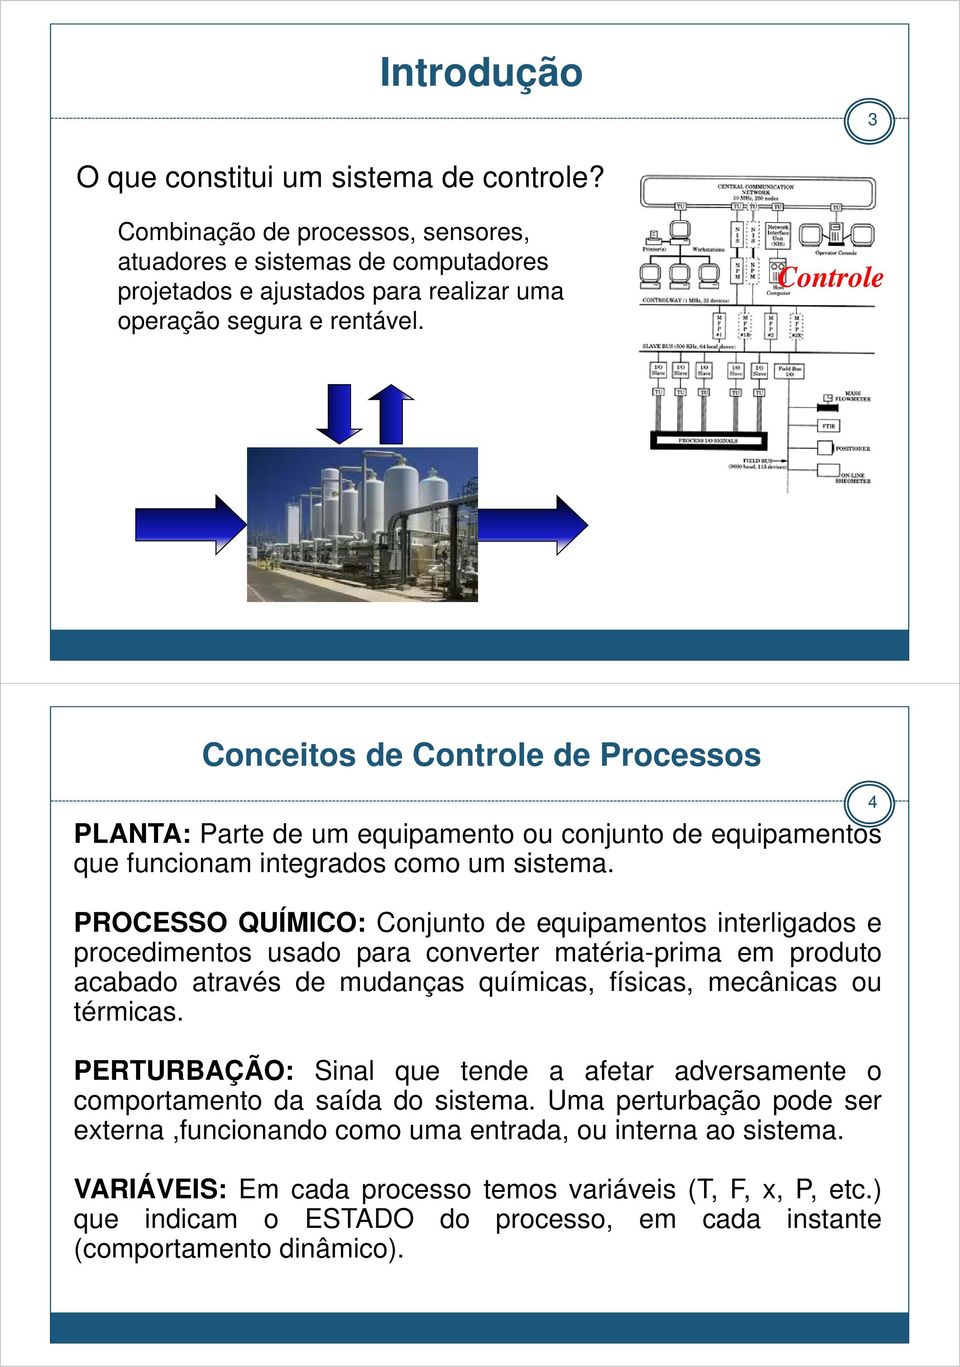 PROCESSO QUÍMICO: Conjunto de equipamentos interligados e procedimentos usado para converter matéria-prima em produto acabado através de mudanças químicas, físicas, mecânicas ou térmicas.